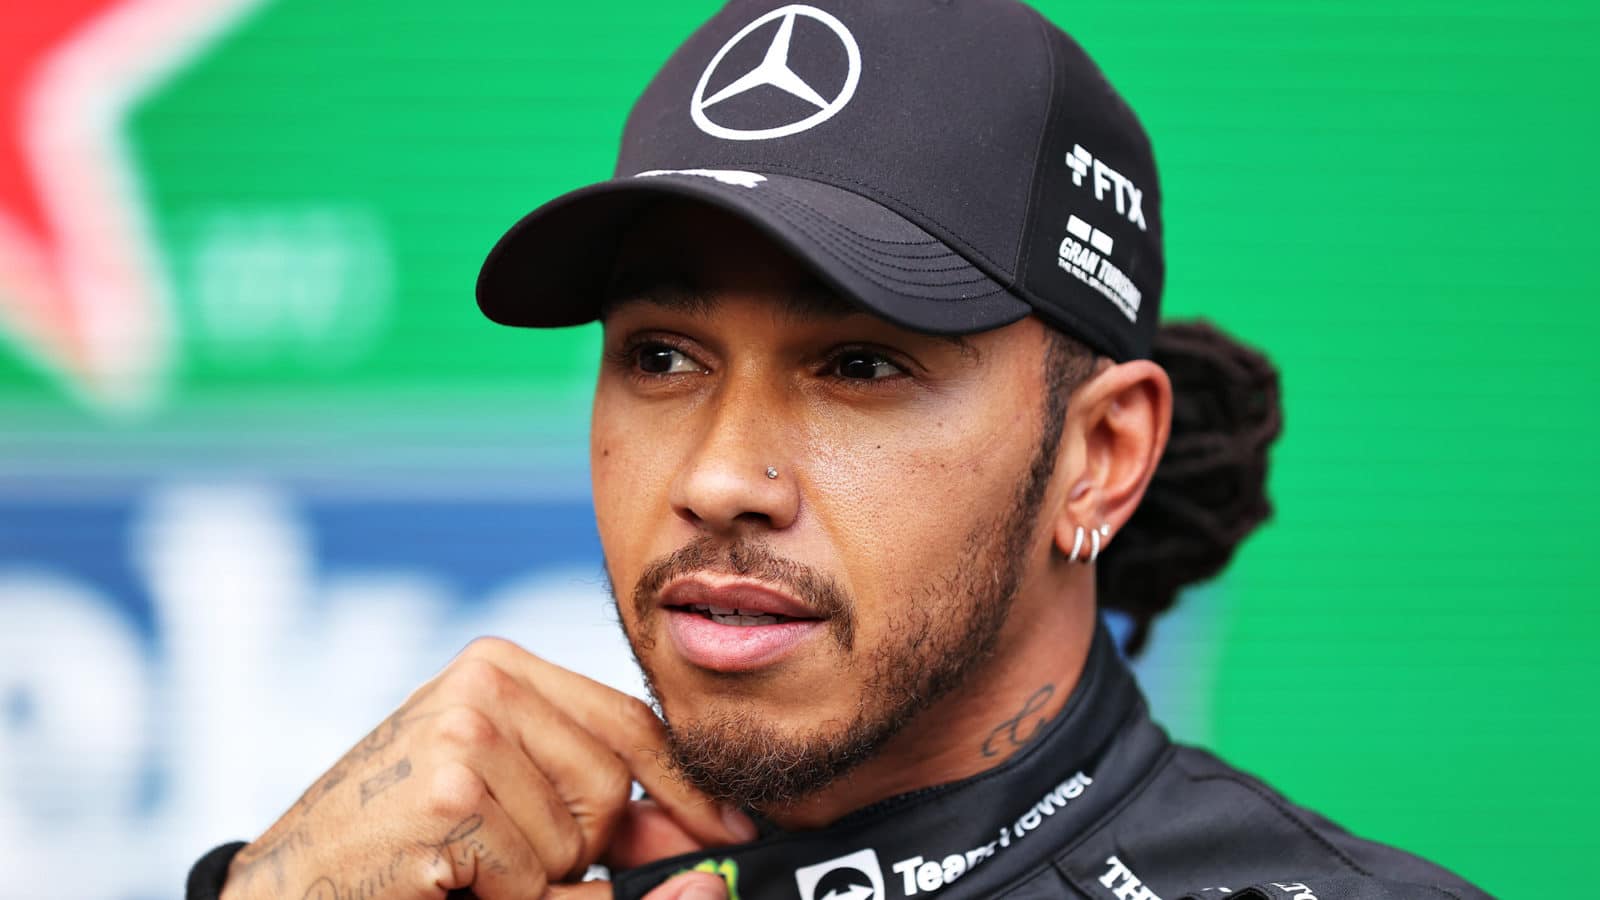 Lewis Hamilton at Interlagos 2021